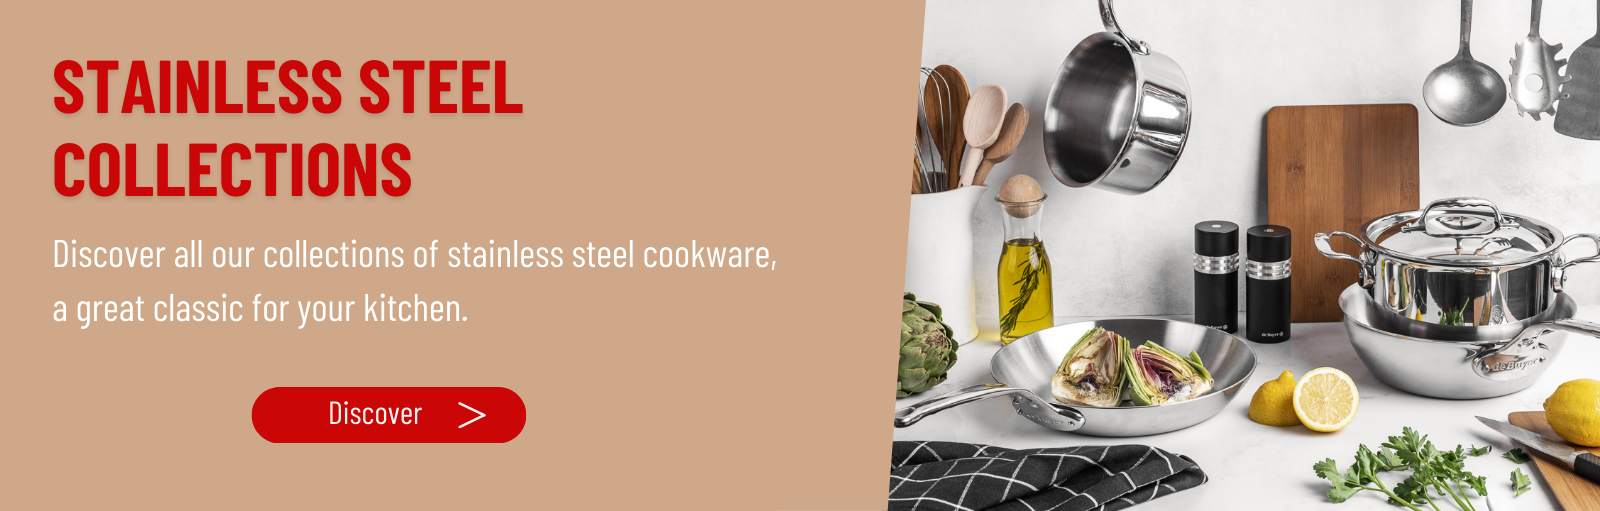 de Buyer Cookware: Fry Pans, Skillets & More